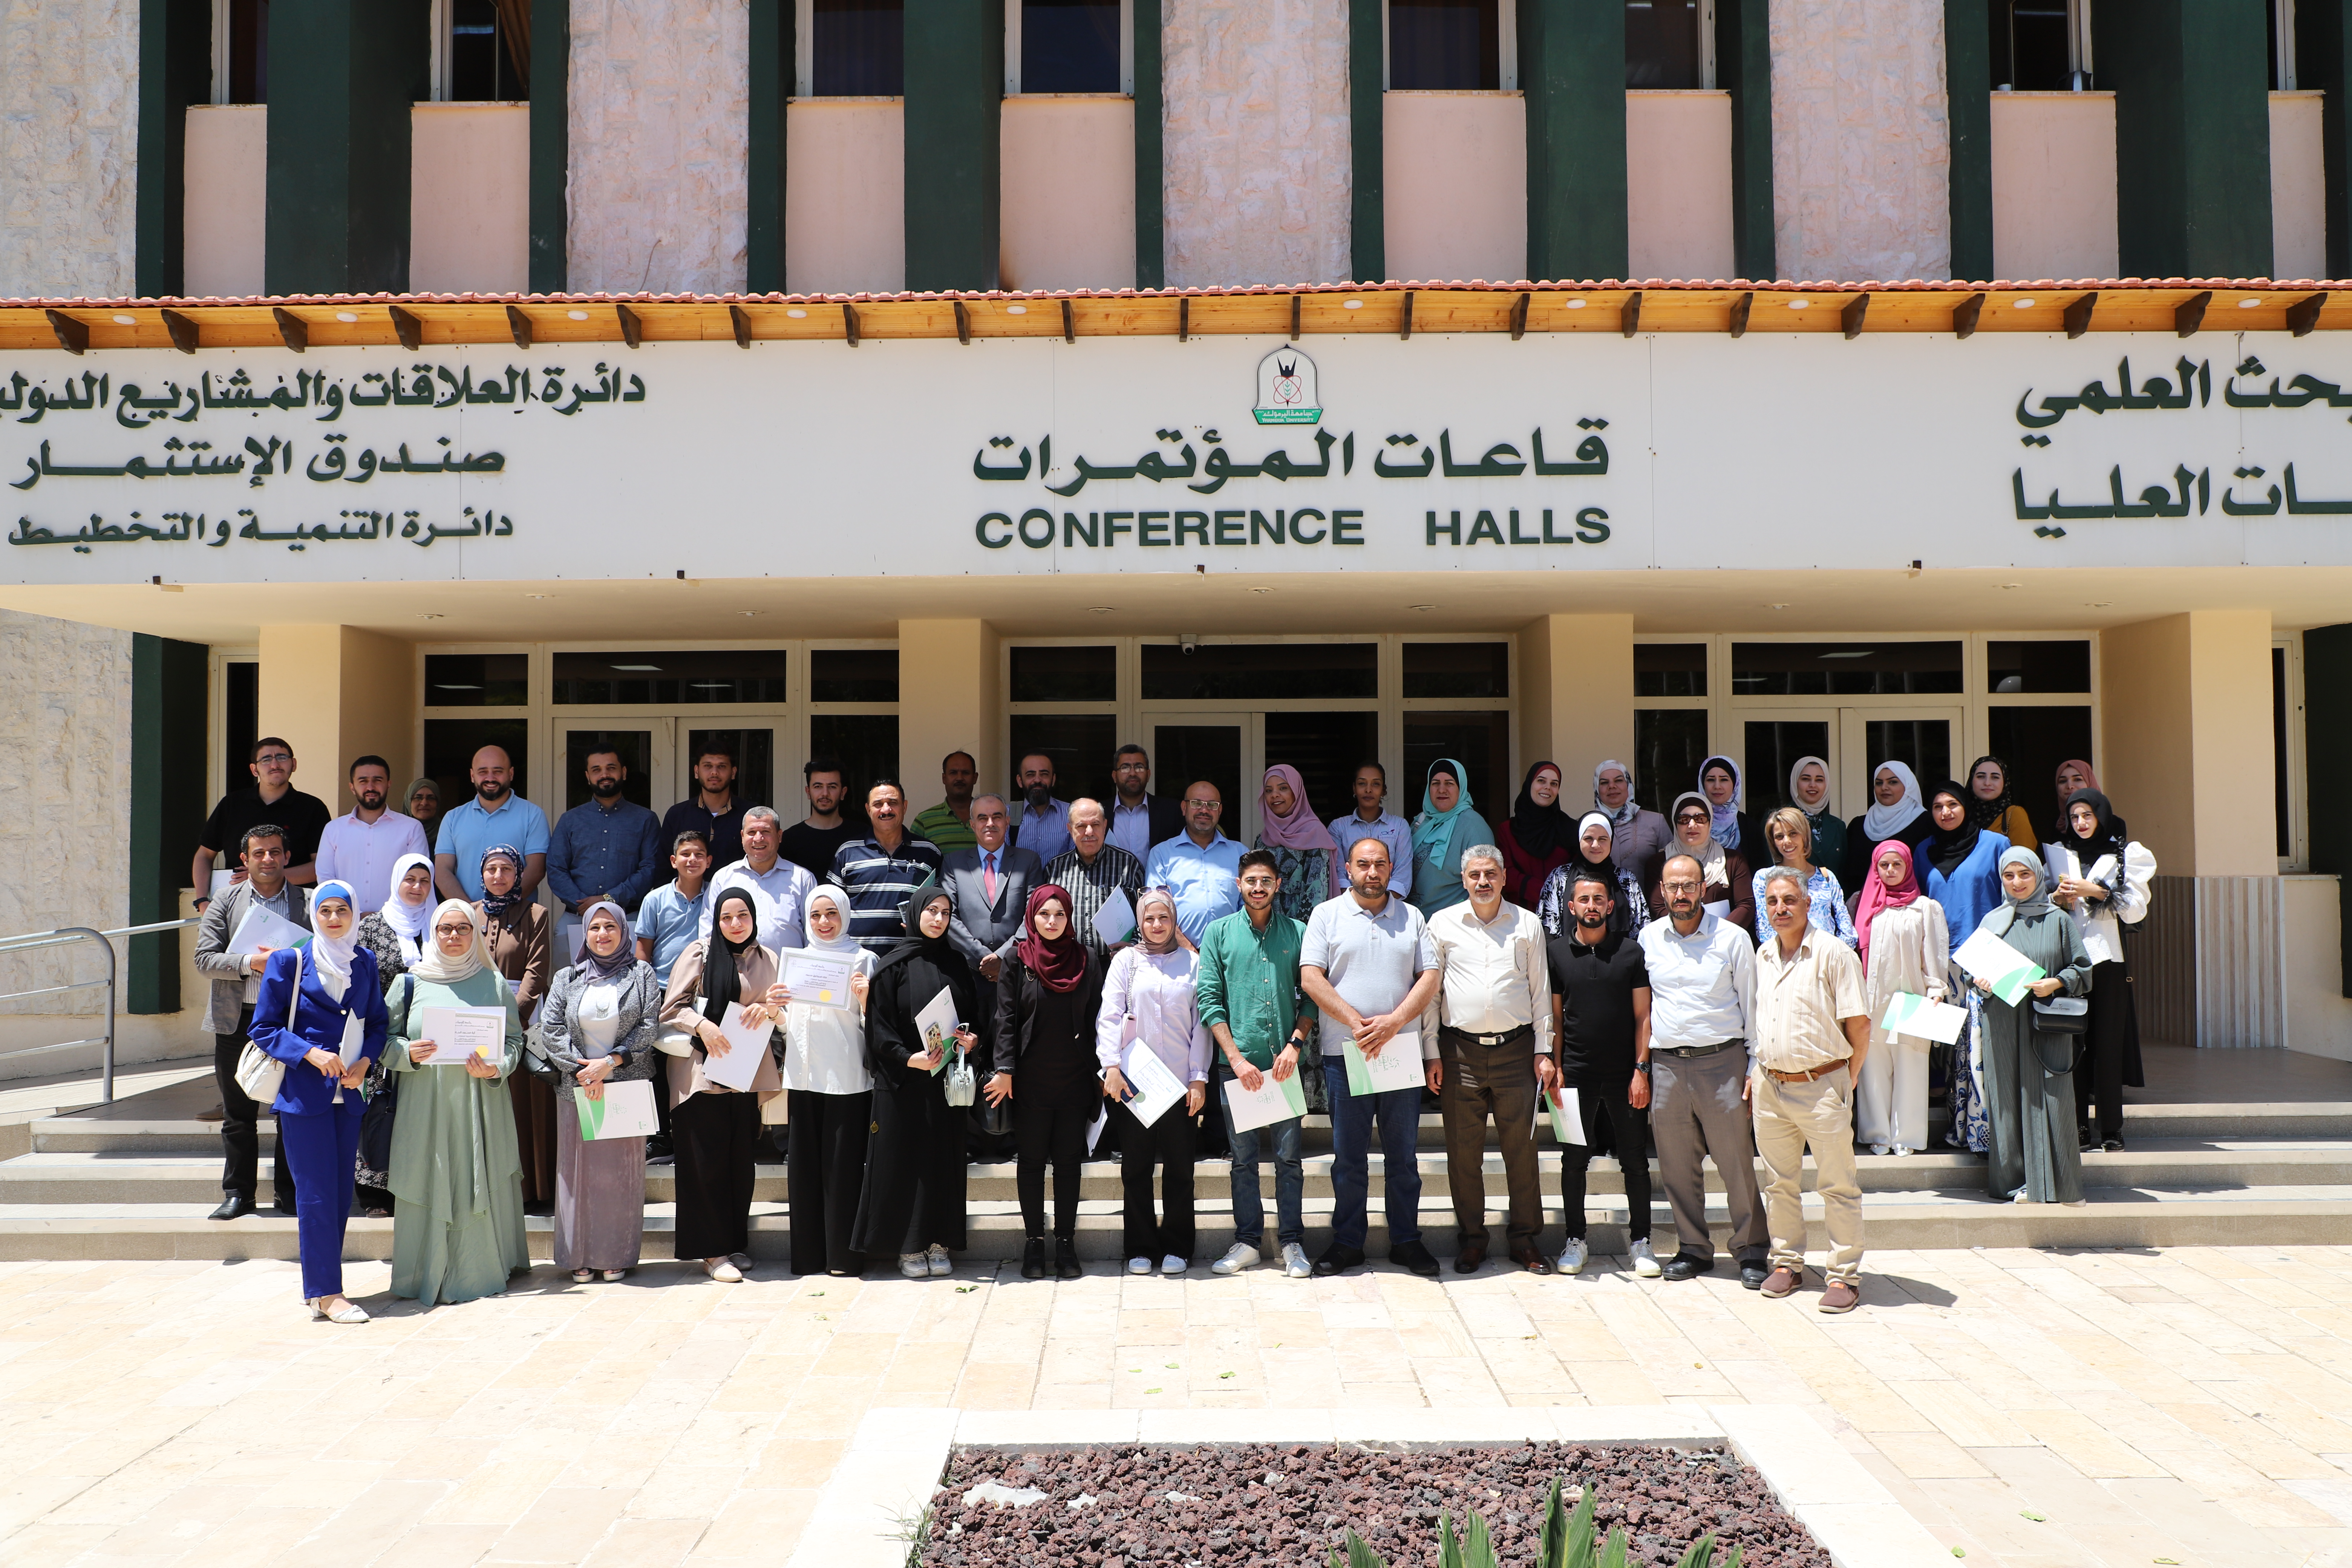 مركز الملكة رانيا للدراسات الأردنية يعقد ورشة متخصصة في"إدارة الجودة الشاملة "